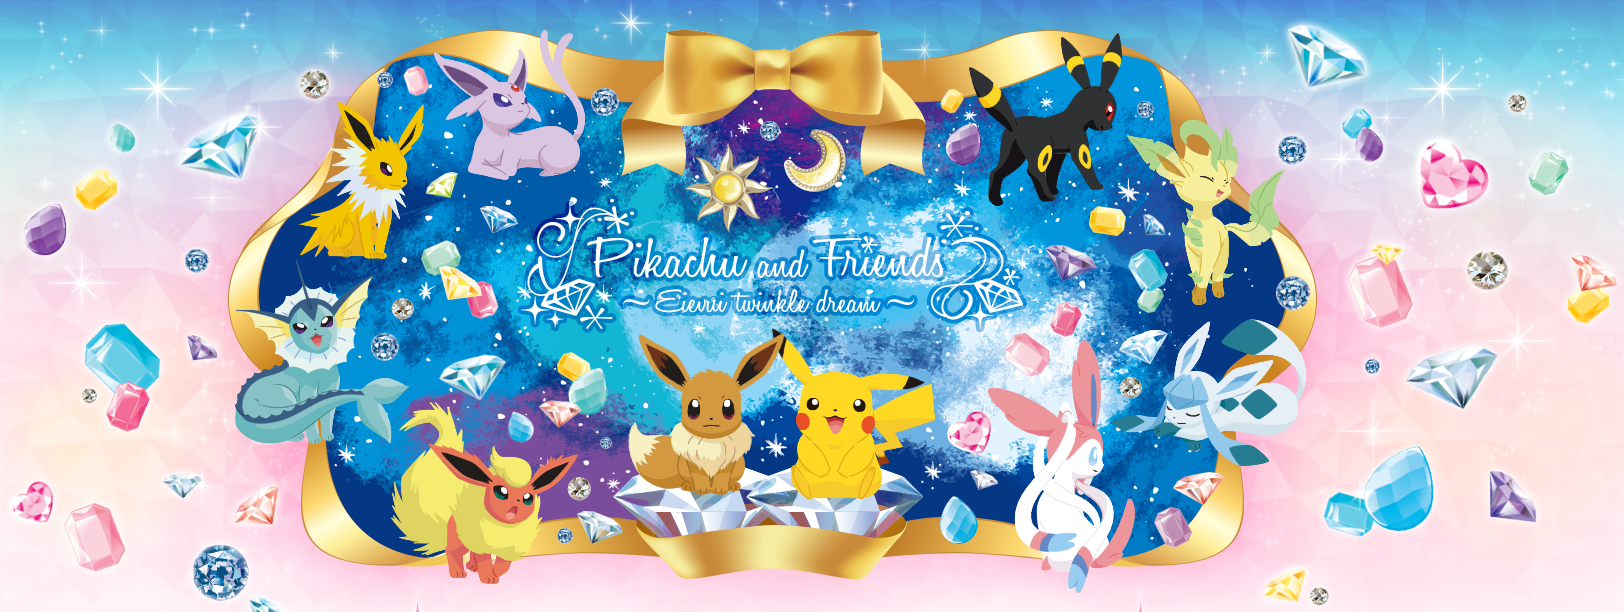 ポケモン 今回のテーマは宝石 イーブイの進化系一番くじ Pikachu And Friends Eievui Twinkle Dream 登場 もふもふちゃんねる